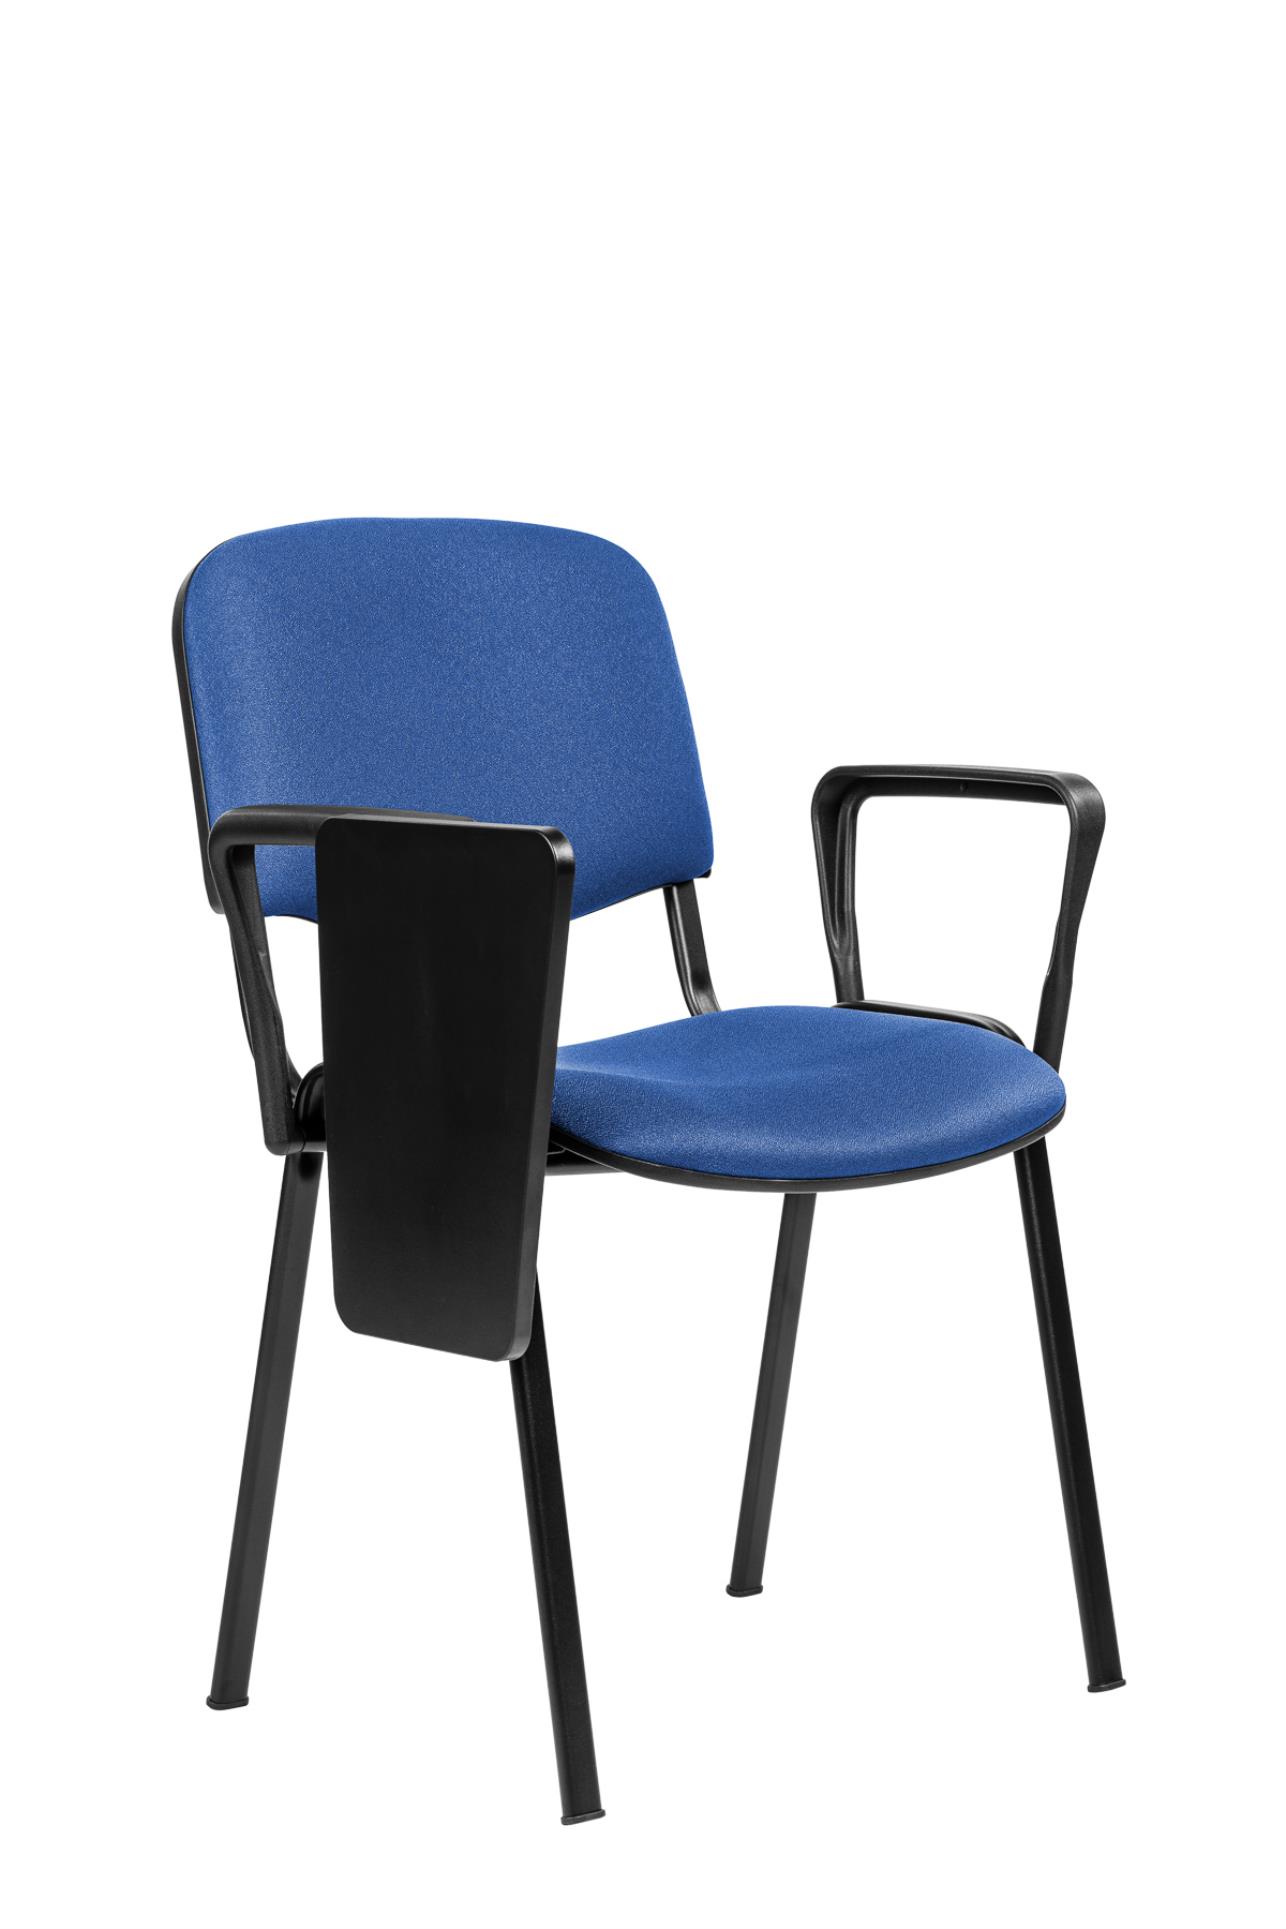 Antares Konferenční židle ISO N se sklopným stolkem - modrá, kostra černá